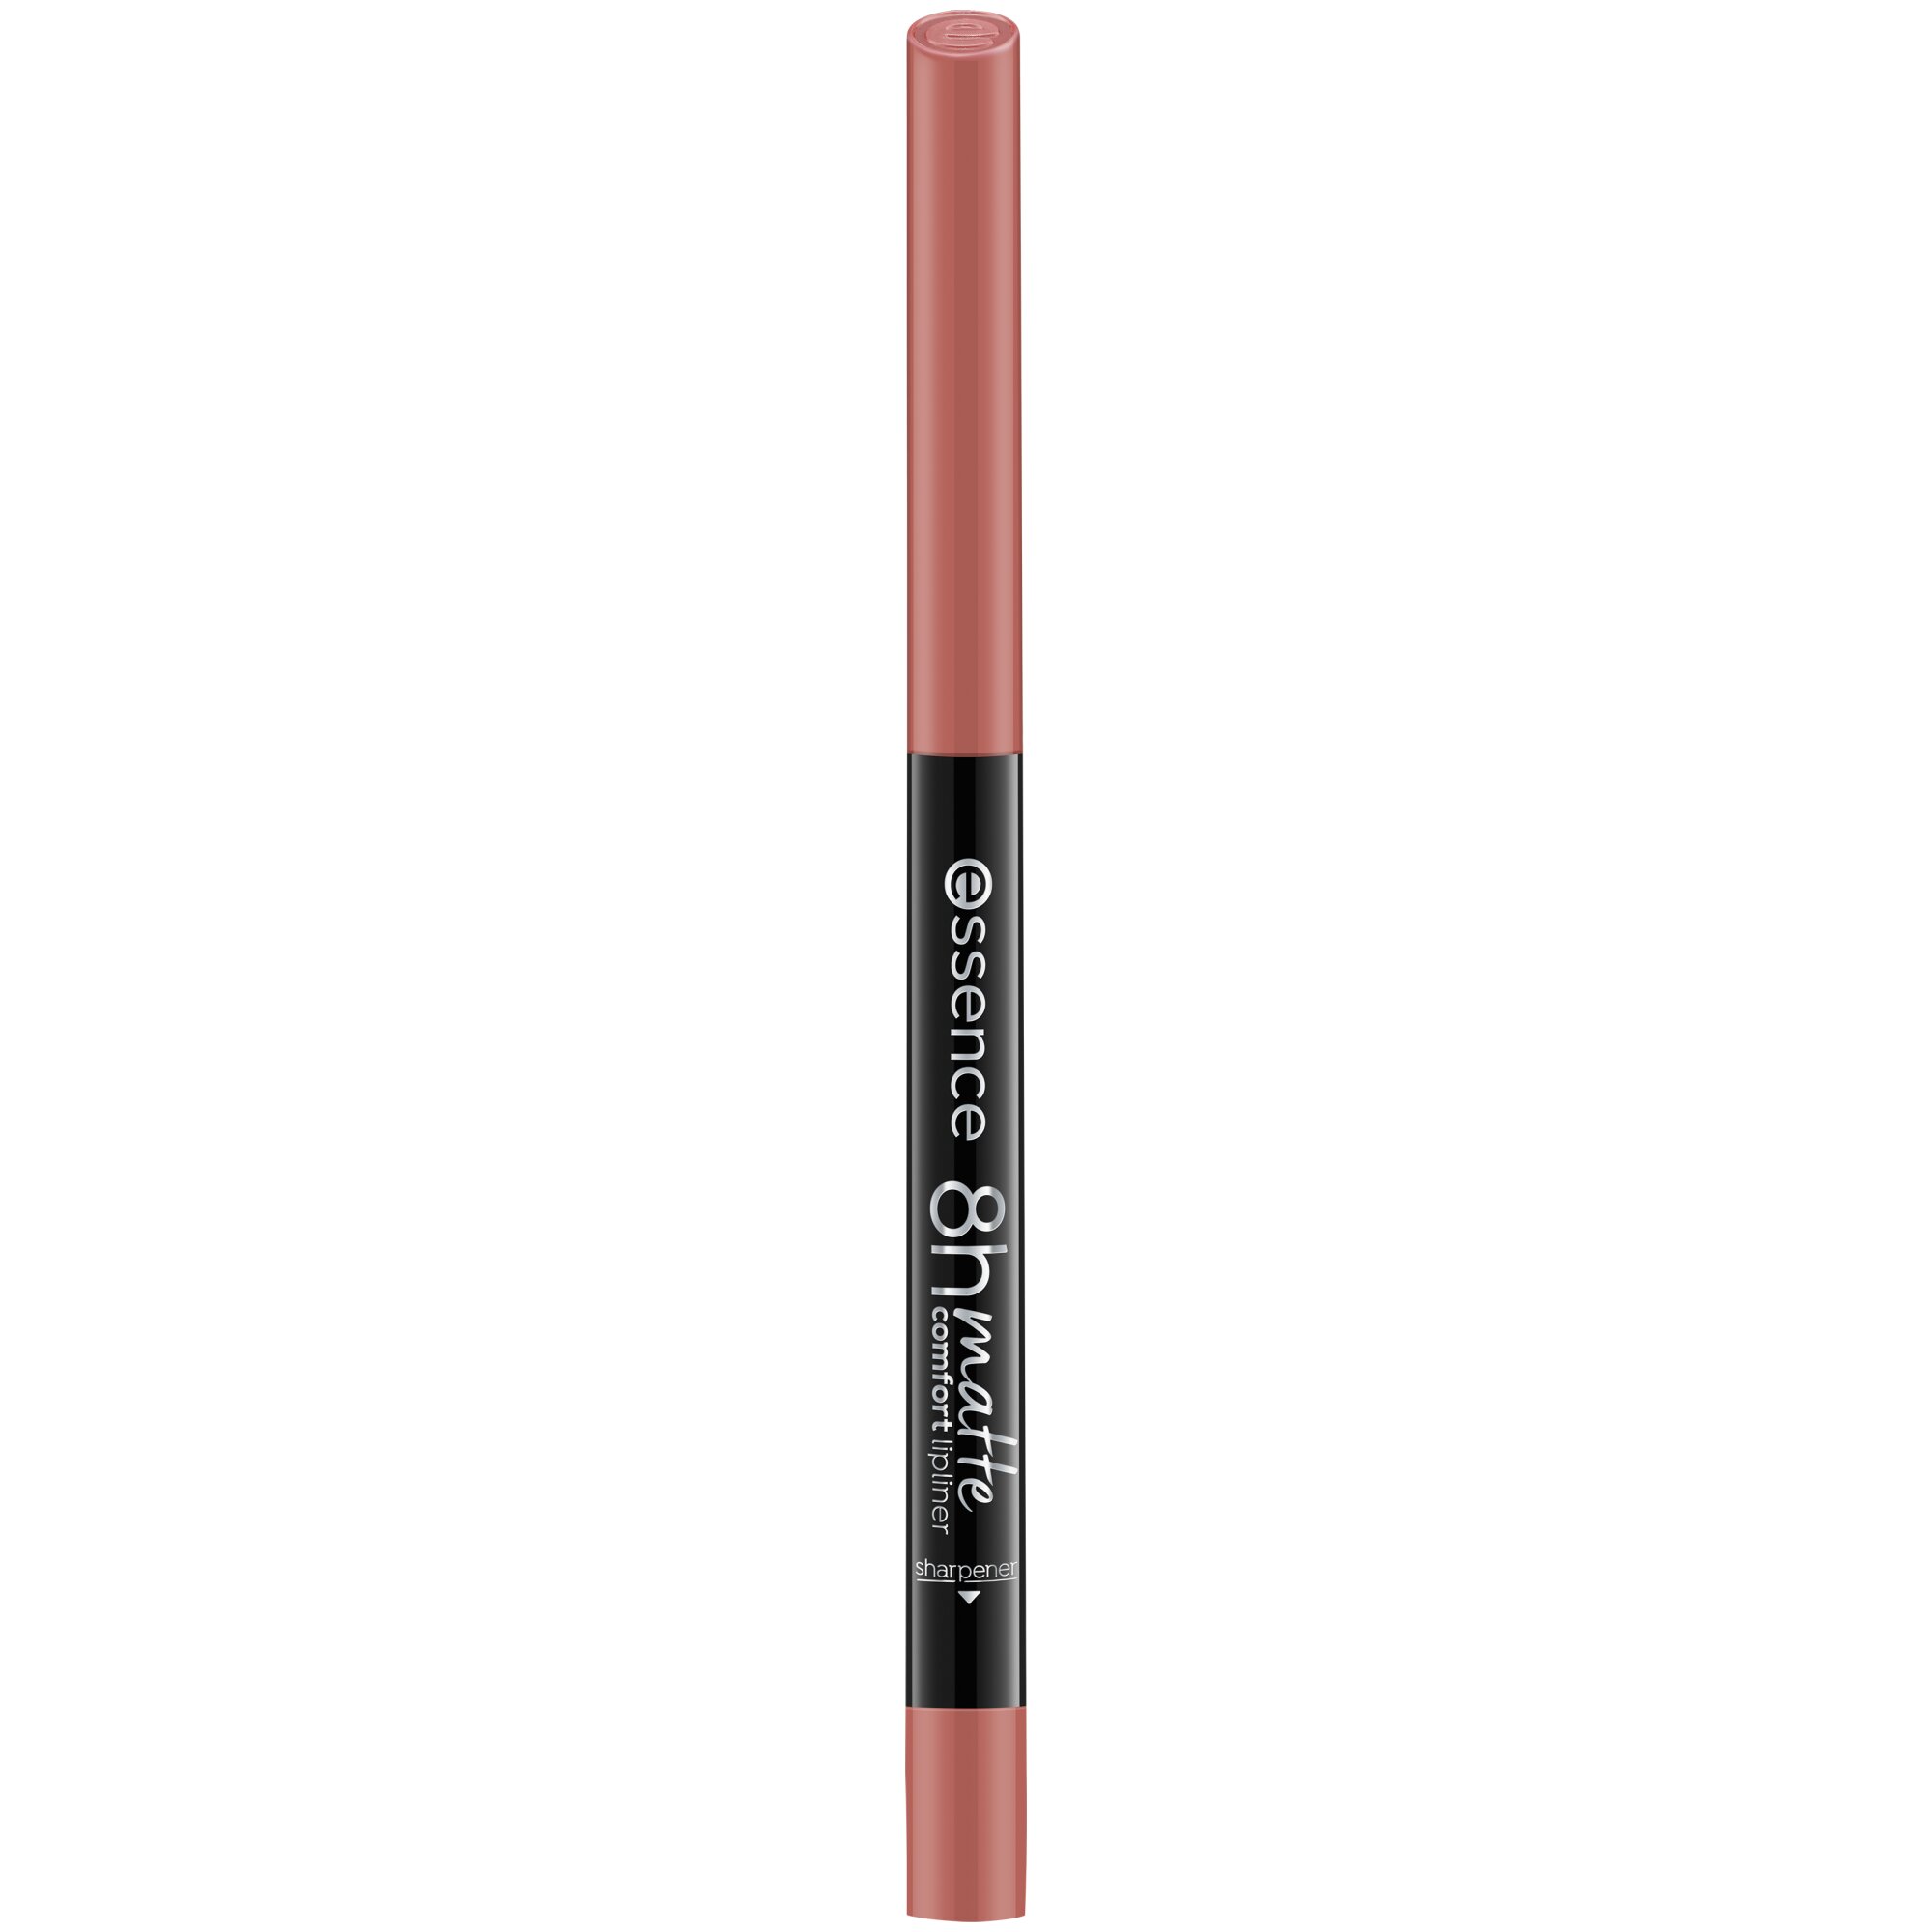 Creion pentru buze mat 8h matte comfort, 04 - Rosy Nude, 0.3 g, Essence